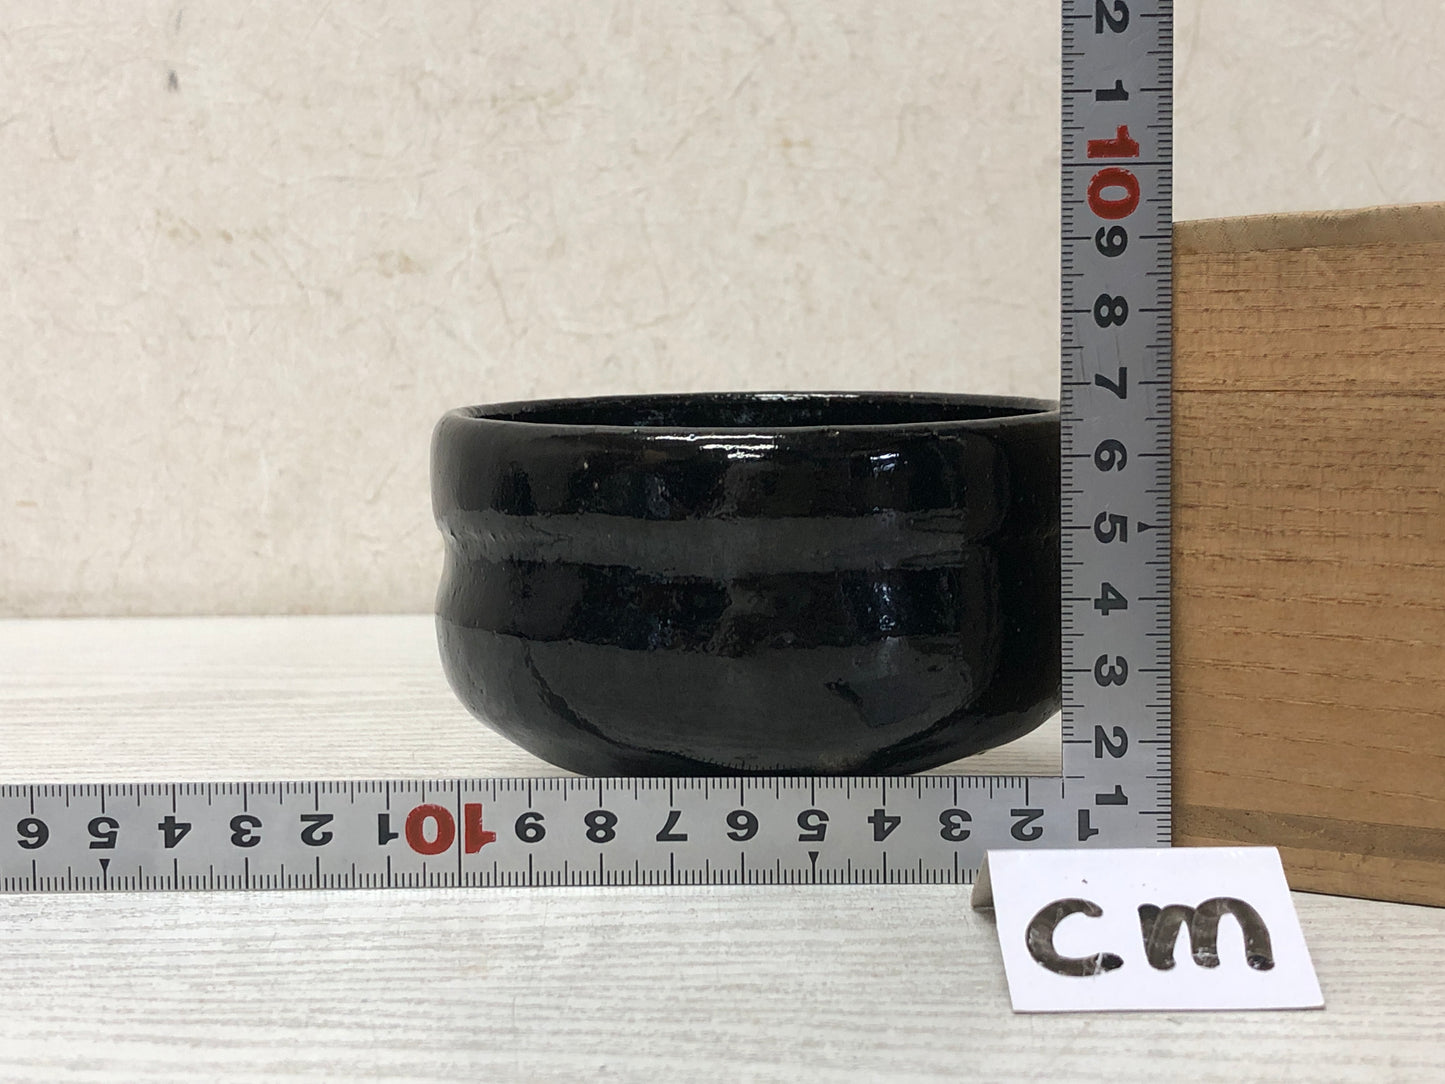 Y3015 CHAWAN Raku-ware black box Japan tea ceremony bowl antique vintage